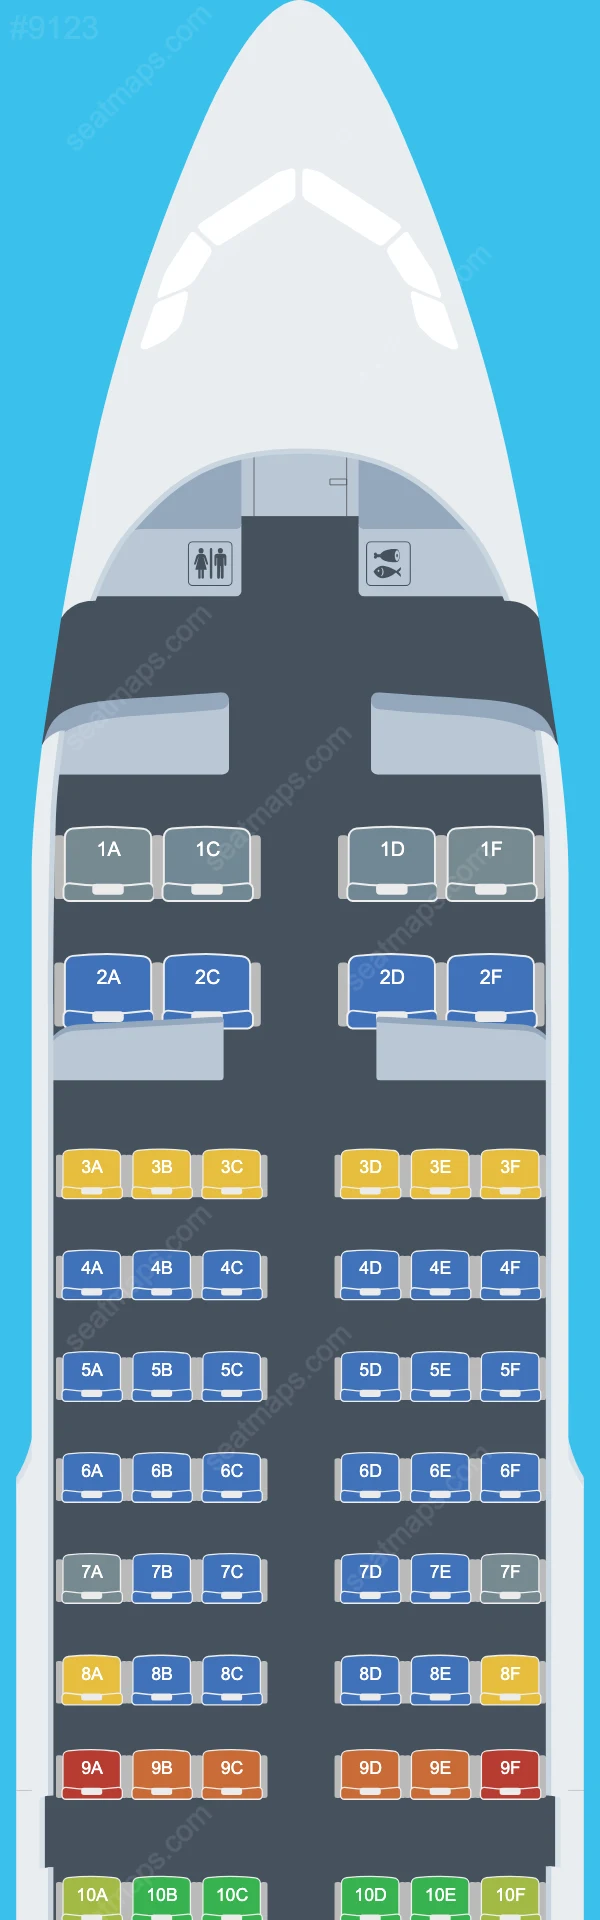 Air Travel Airbus A319 Seat Maps A319-100